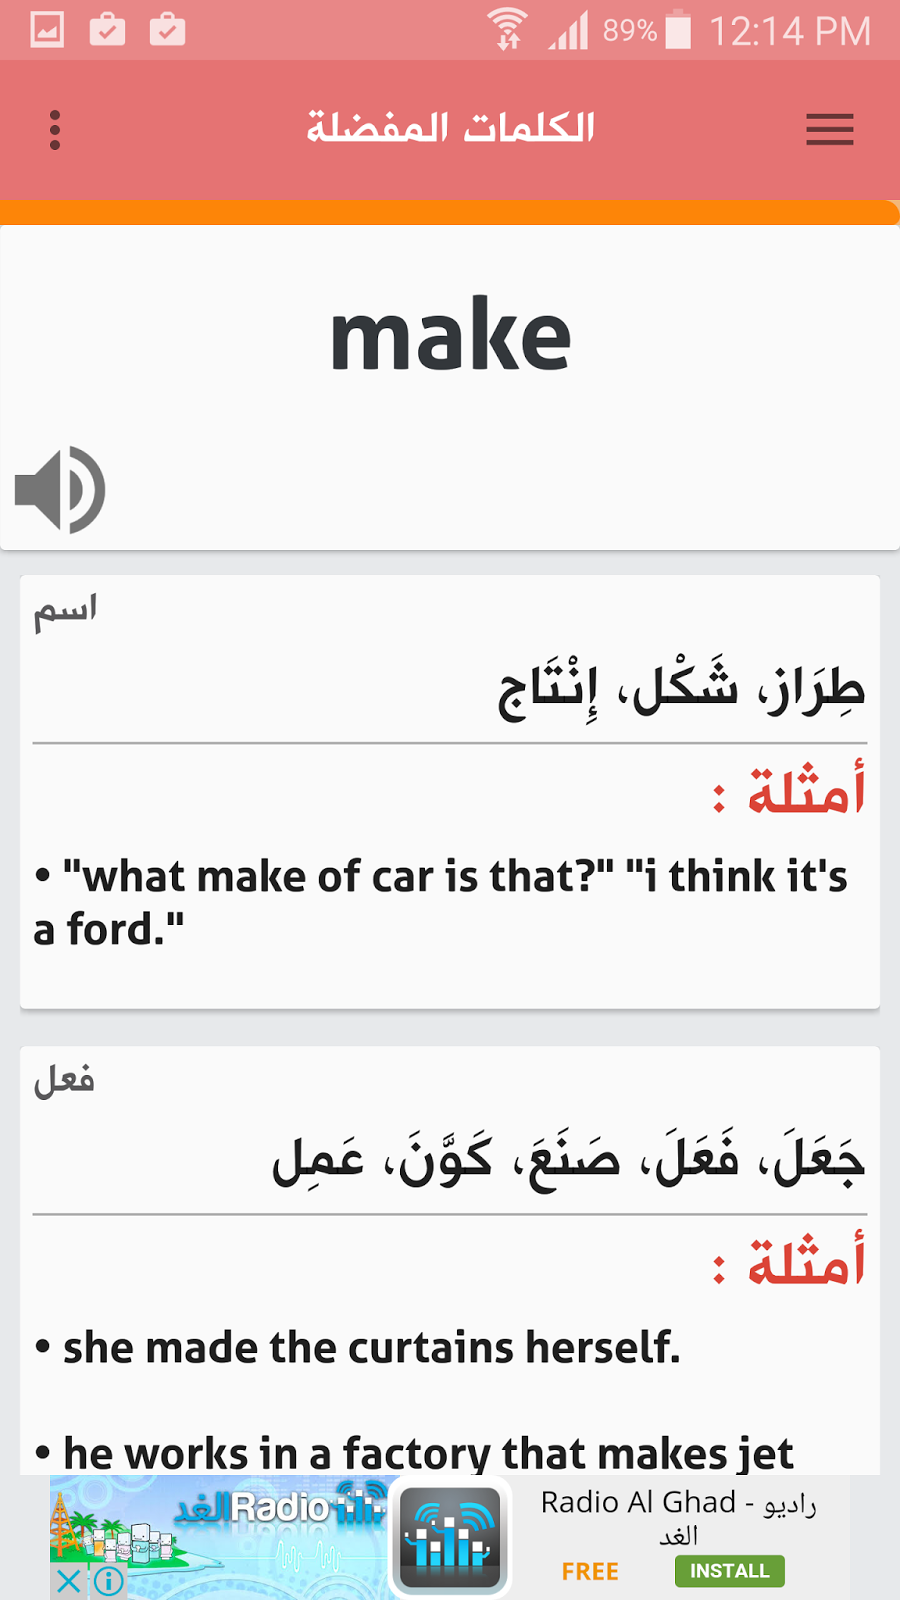 معلم الإنجليزية تطبيق عربي مجاني لتعلم اللغة الانجليزية باسلوب مبسط للجميع | بحرية درويد